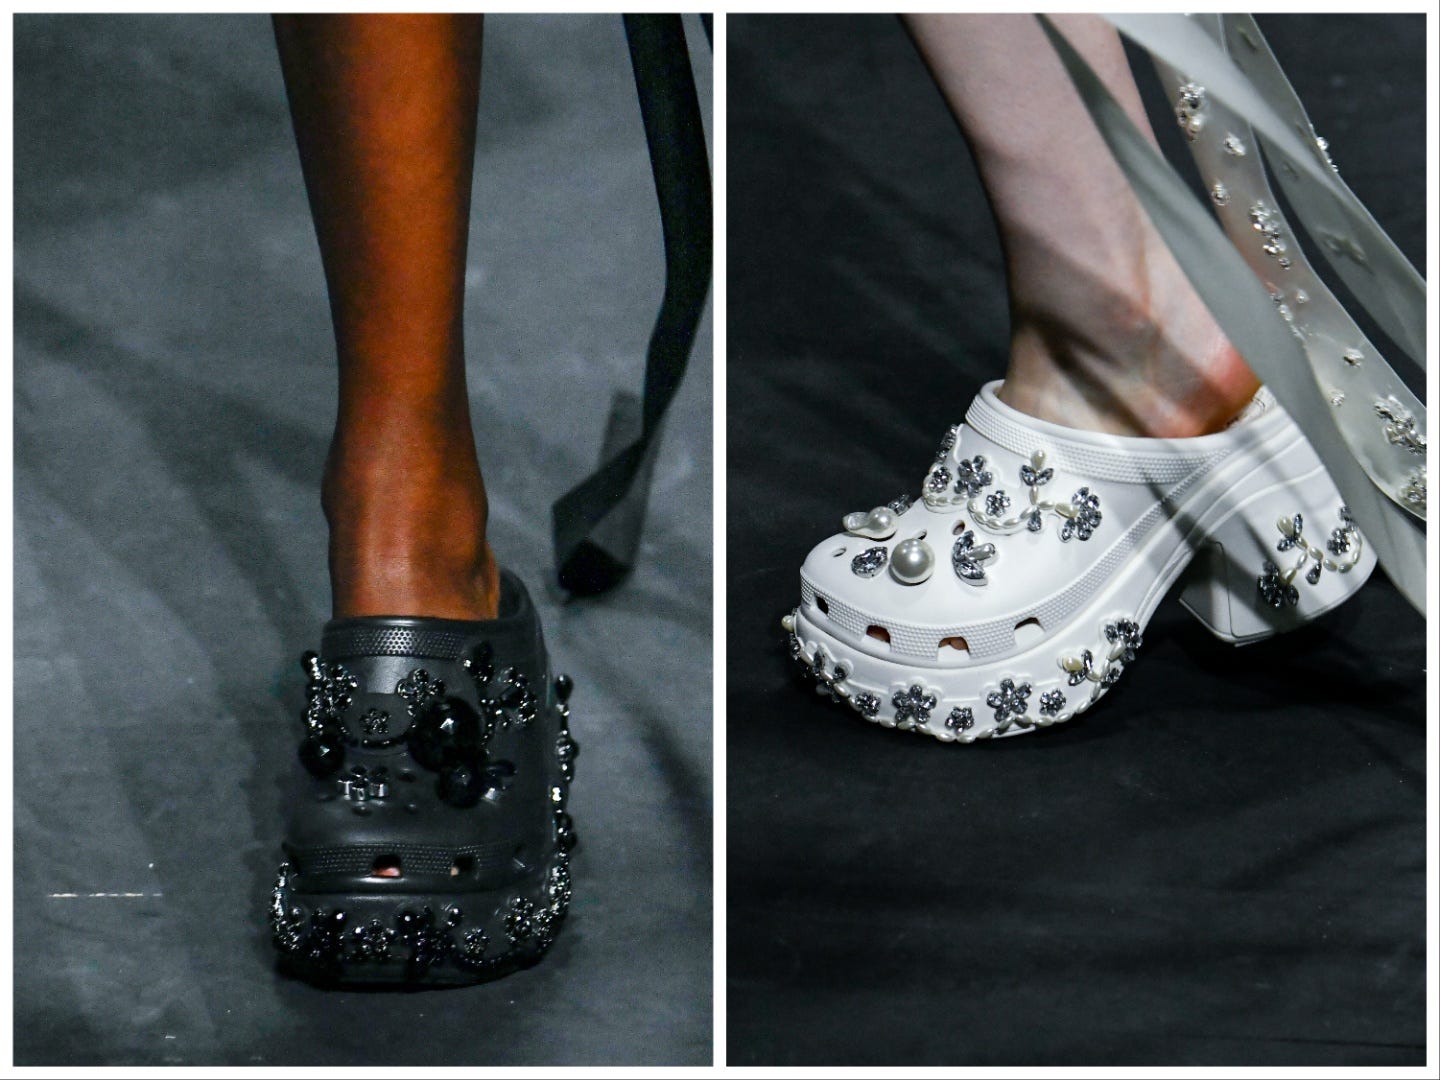 Model trägt schwarze Crocs mit schwarzen Strassverzierungen (links), Model trägt weiße Crocs mit Strass- und Perlenverzierungen